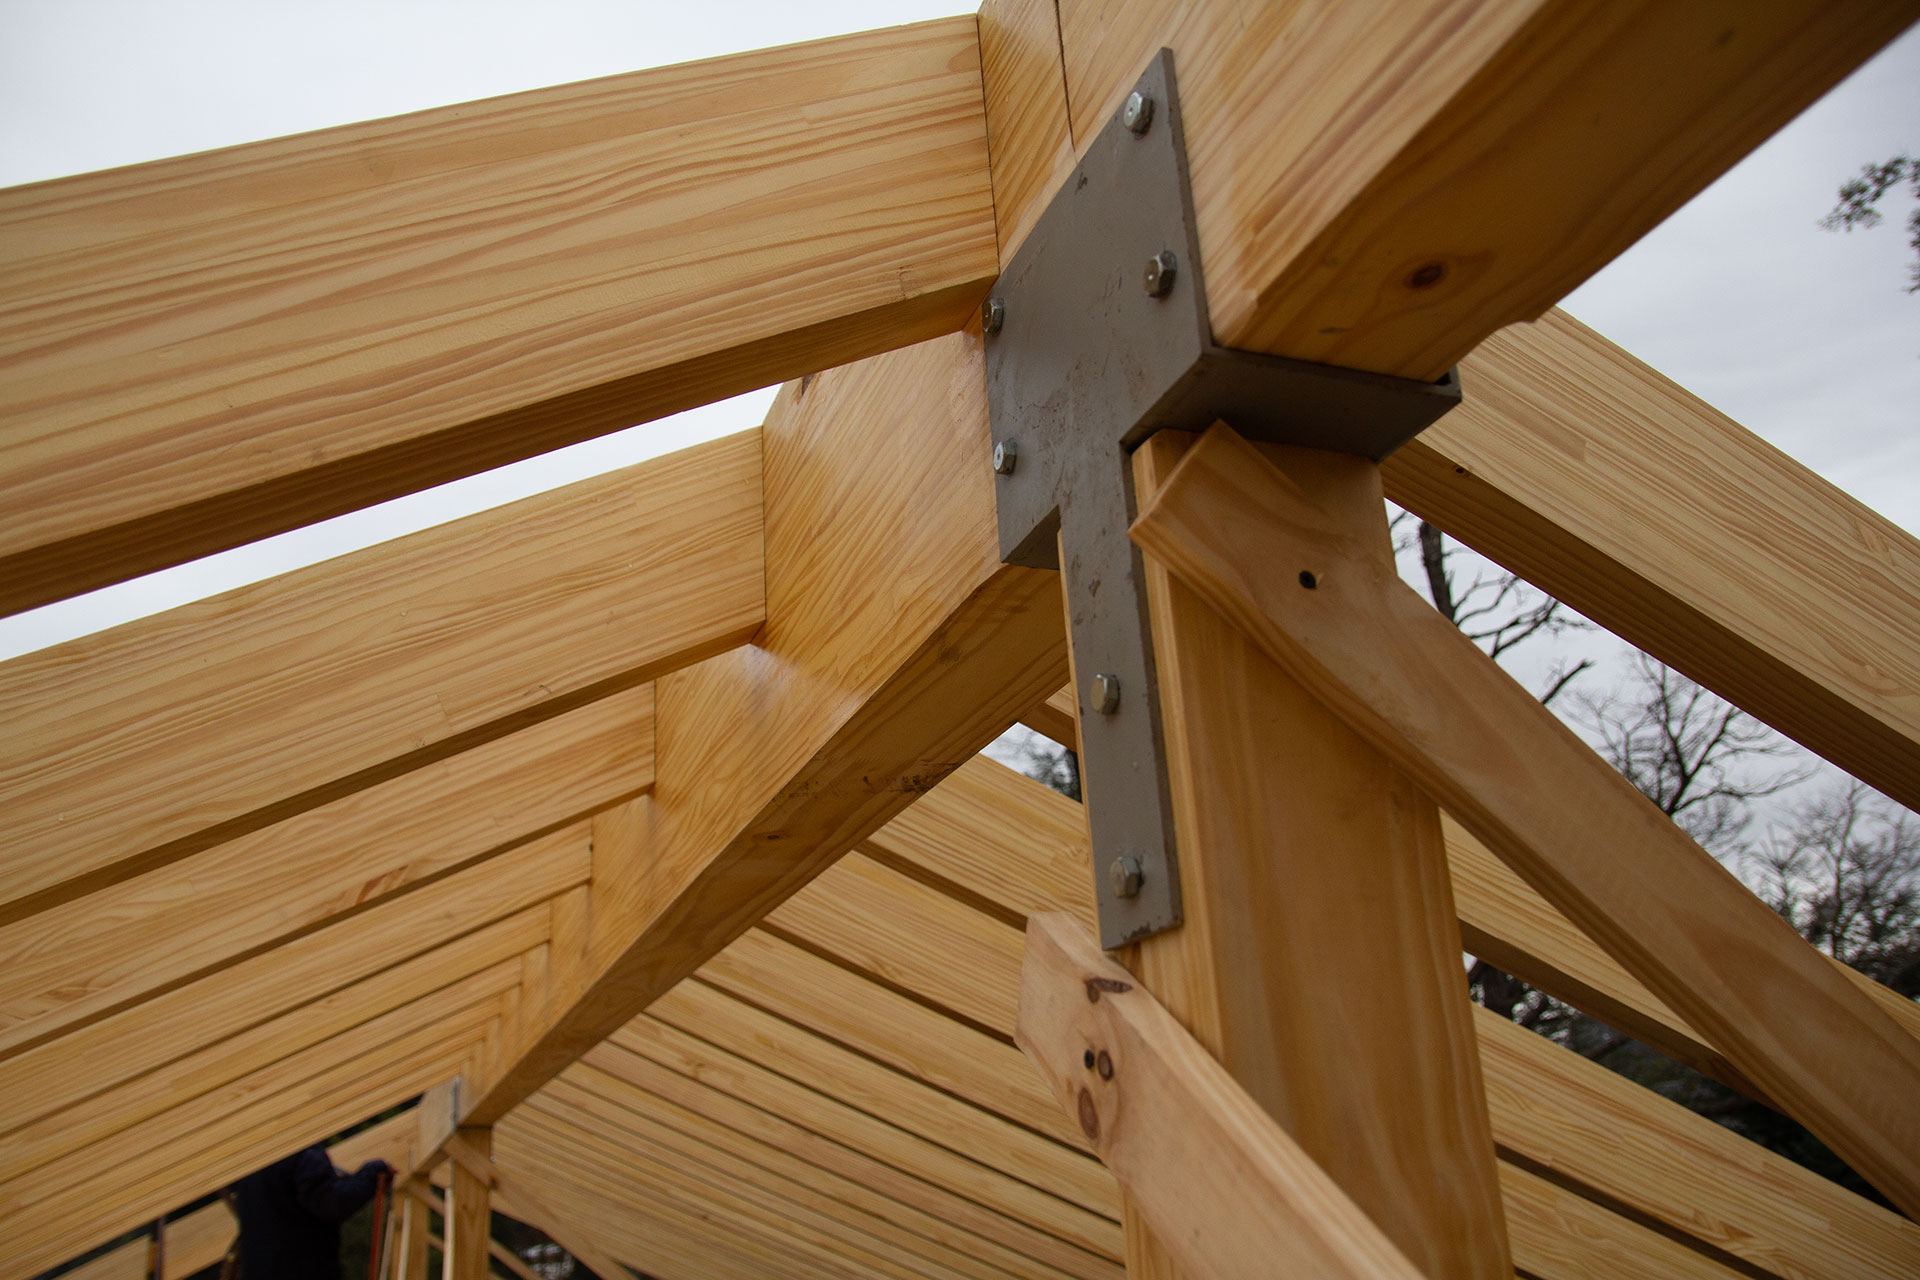 La estructura de madera laminada se asegura bien con buenos refuerzos de metal